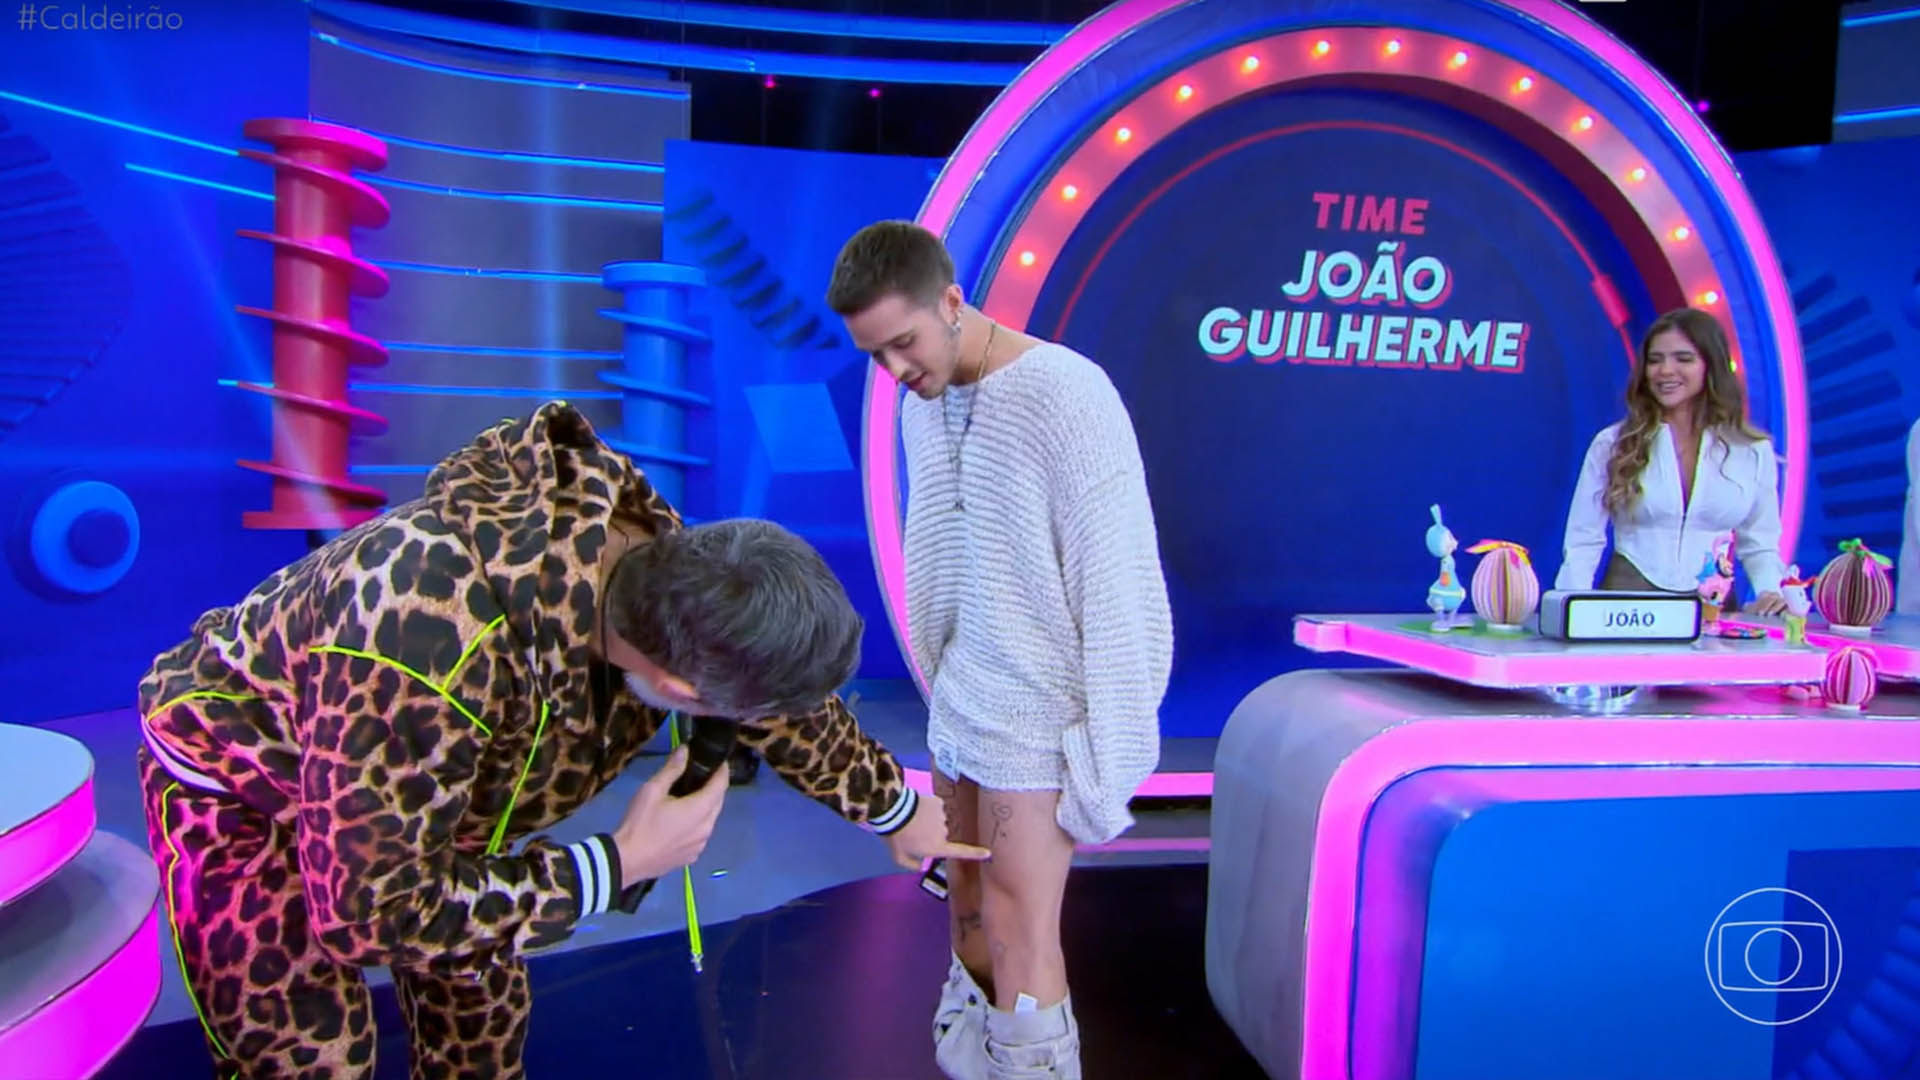 João Guilherme choca ao abaixar a calça na TV 